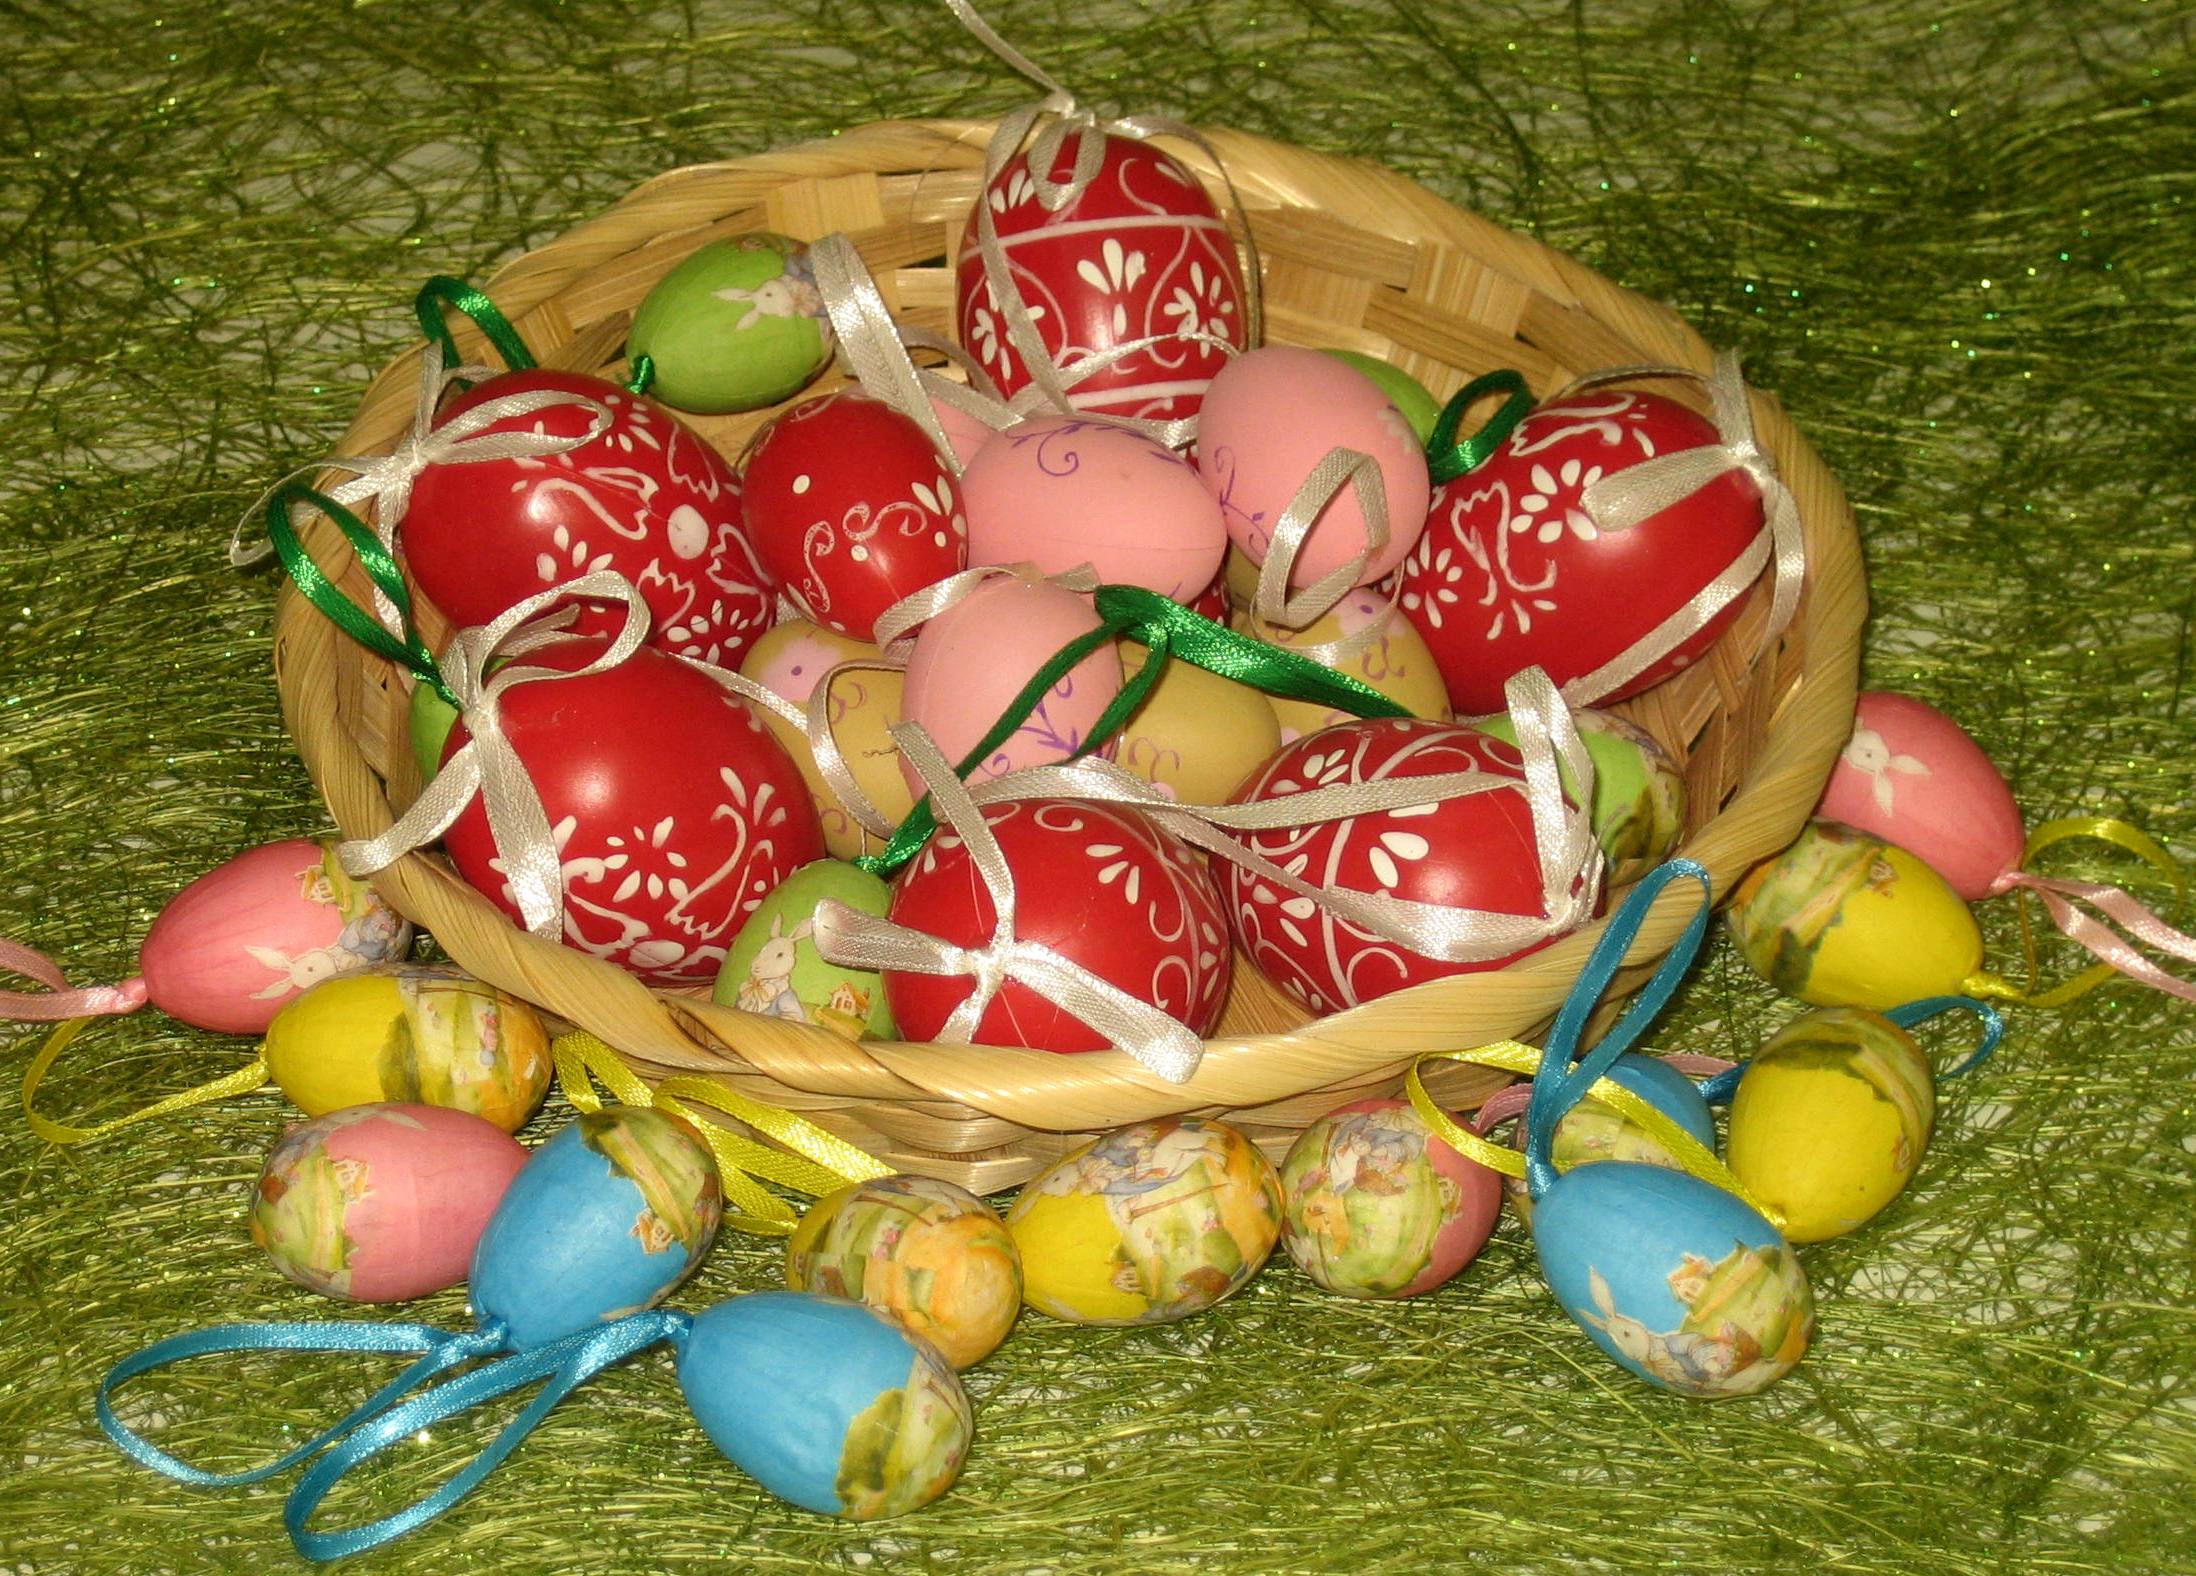 P+P - selyemvirágok, húsvéti dekorációk, húsvéti fonott kosarak, húsvéti vidám színes termékek, húsvéti tojás díszek